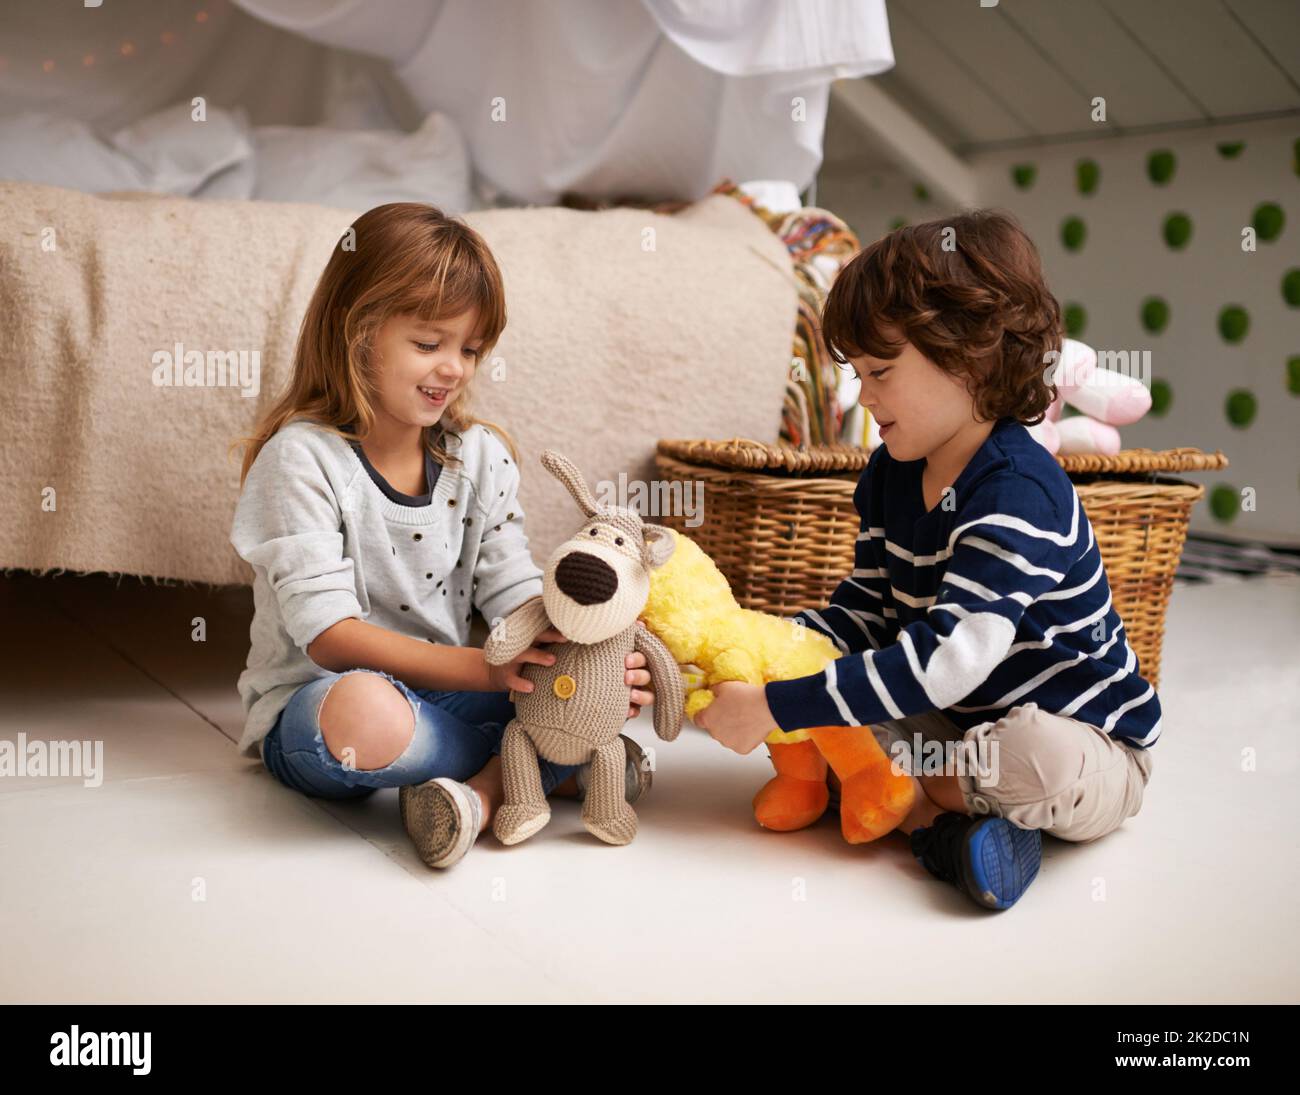 Faisons notre propre zoo pour enfants. Photo de deux adorables frères et sœurs jouant avec leurs animaux en peluche. Banque D'Images